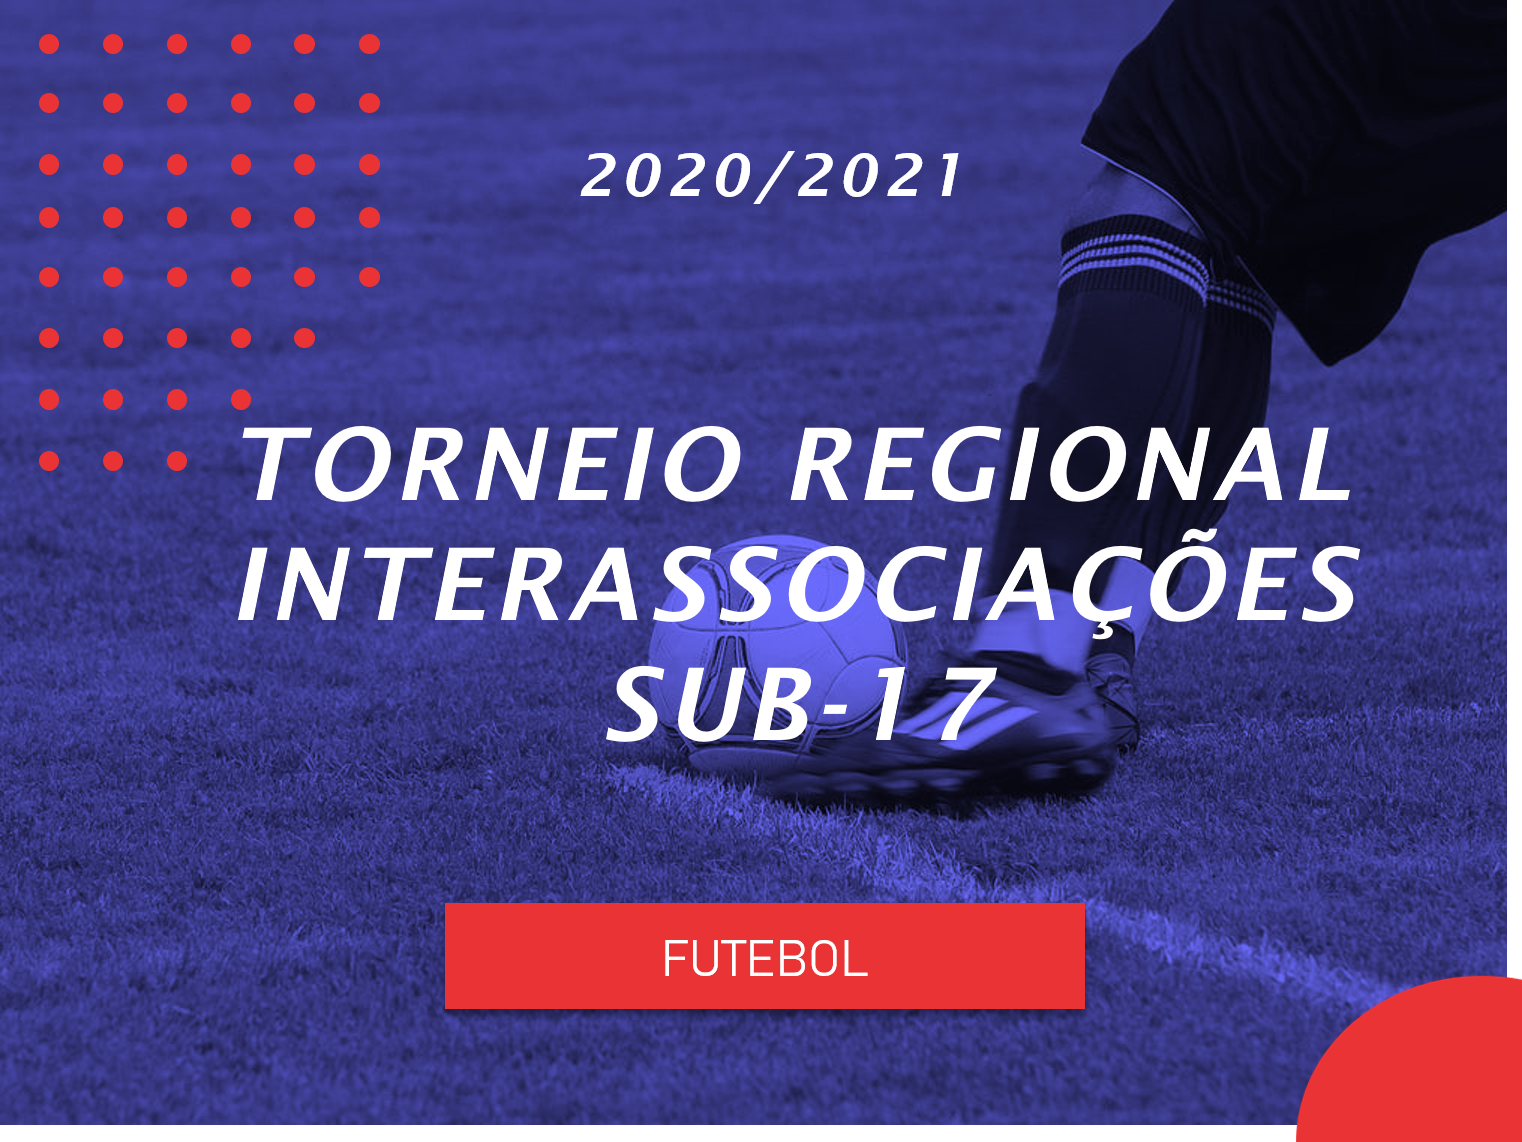 Torneio Regional Interassociações - Sub17 - Futebol